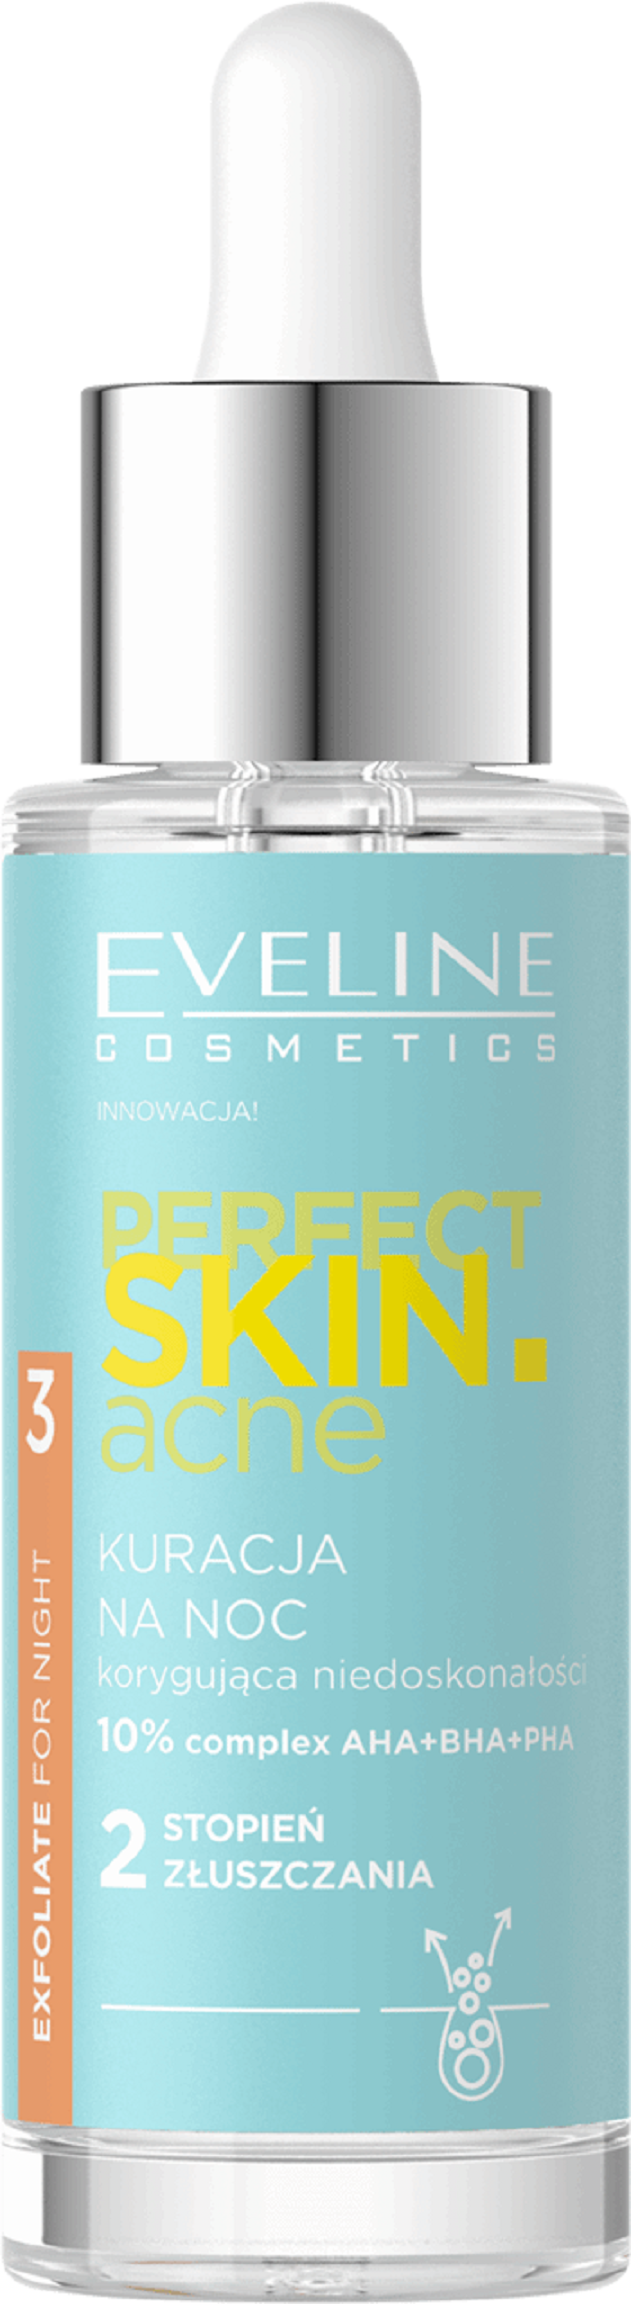 Eveline Cosmetics Perfect Skin.acne Exfoliate For Night Нічний догляд для коригування недосконалостей «1-й ступінь ексфоліації»